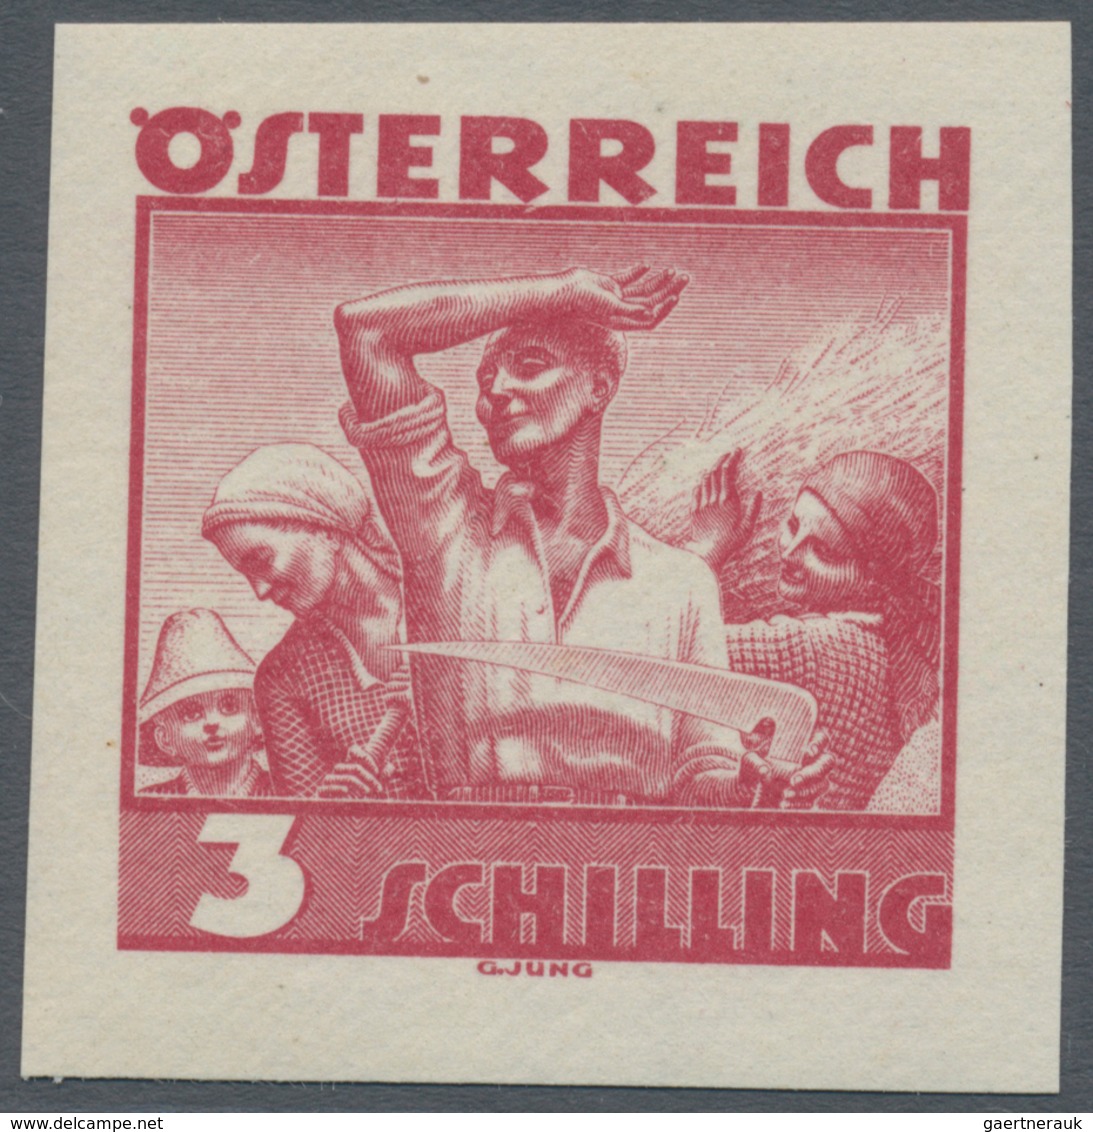 Österreich: 1934, Freimarken "Trachten", 3 Sch. "Ländliche Arbeit", sechs ungezähnte Offsetdruck-Pro